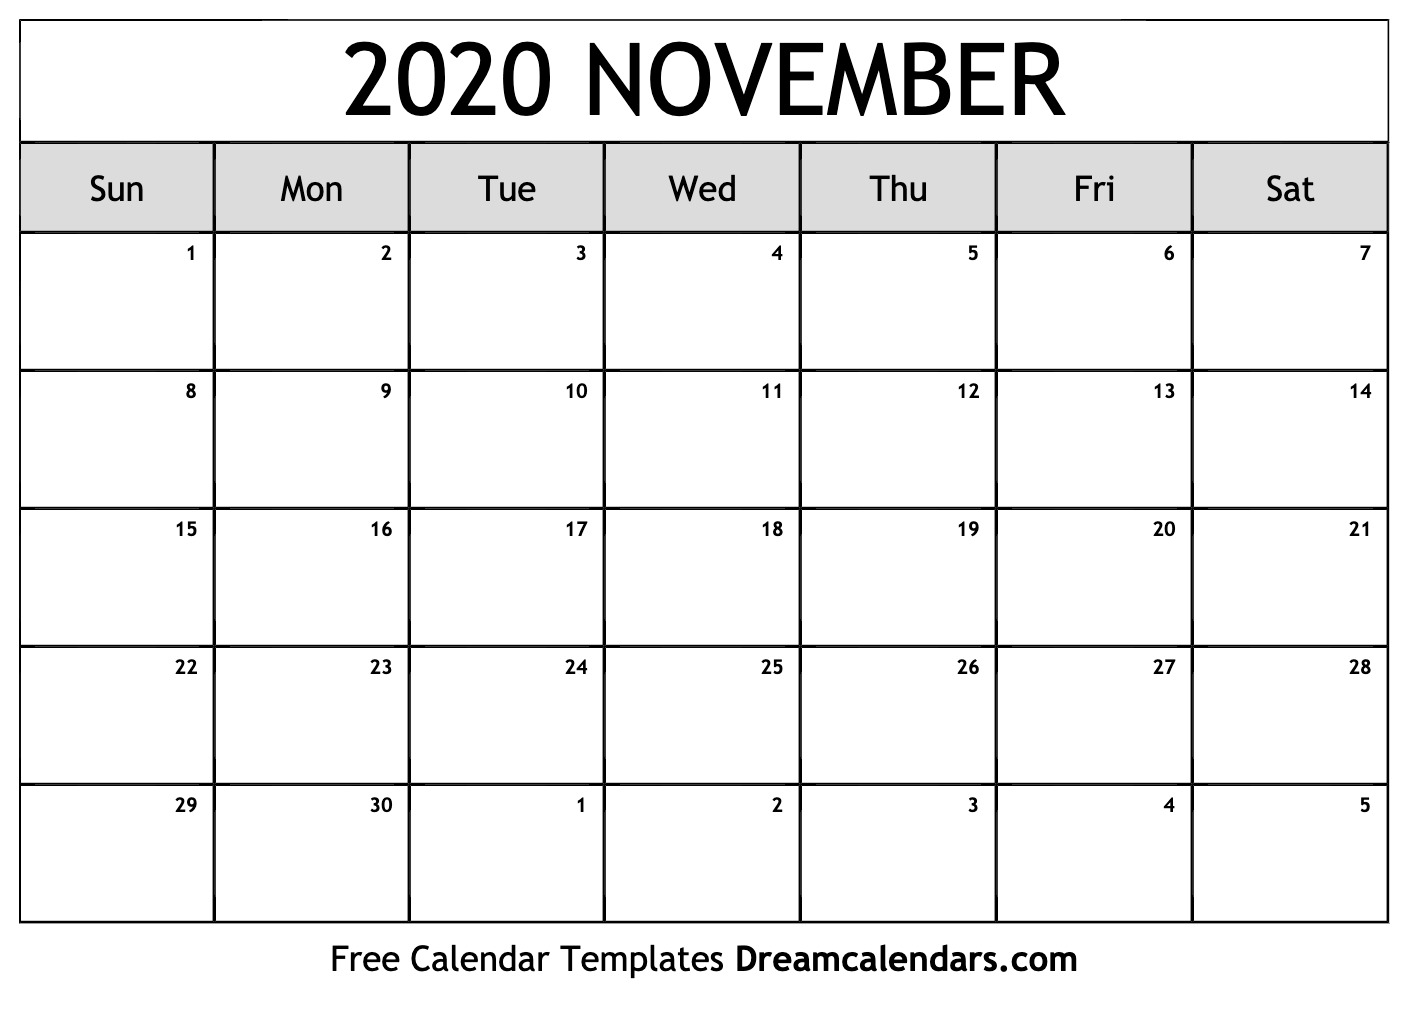 odia calendar november 2020